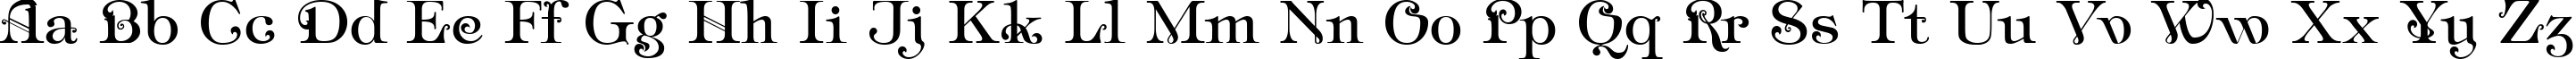 Пример написания английского алфавита шрифтом Ampir Deco